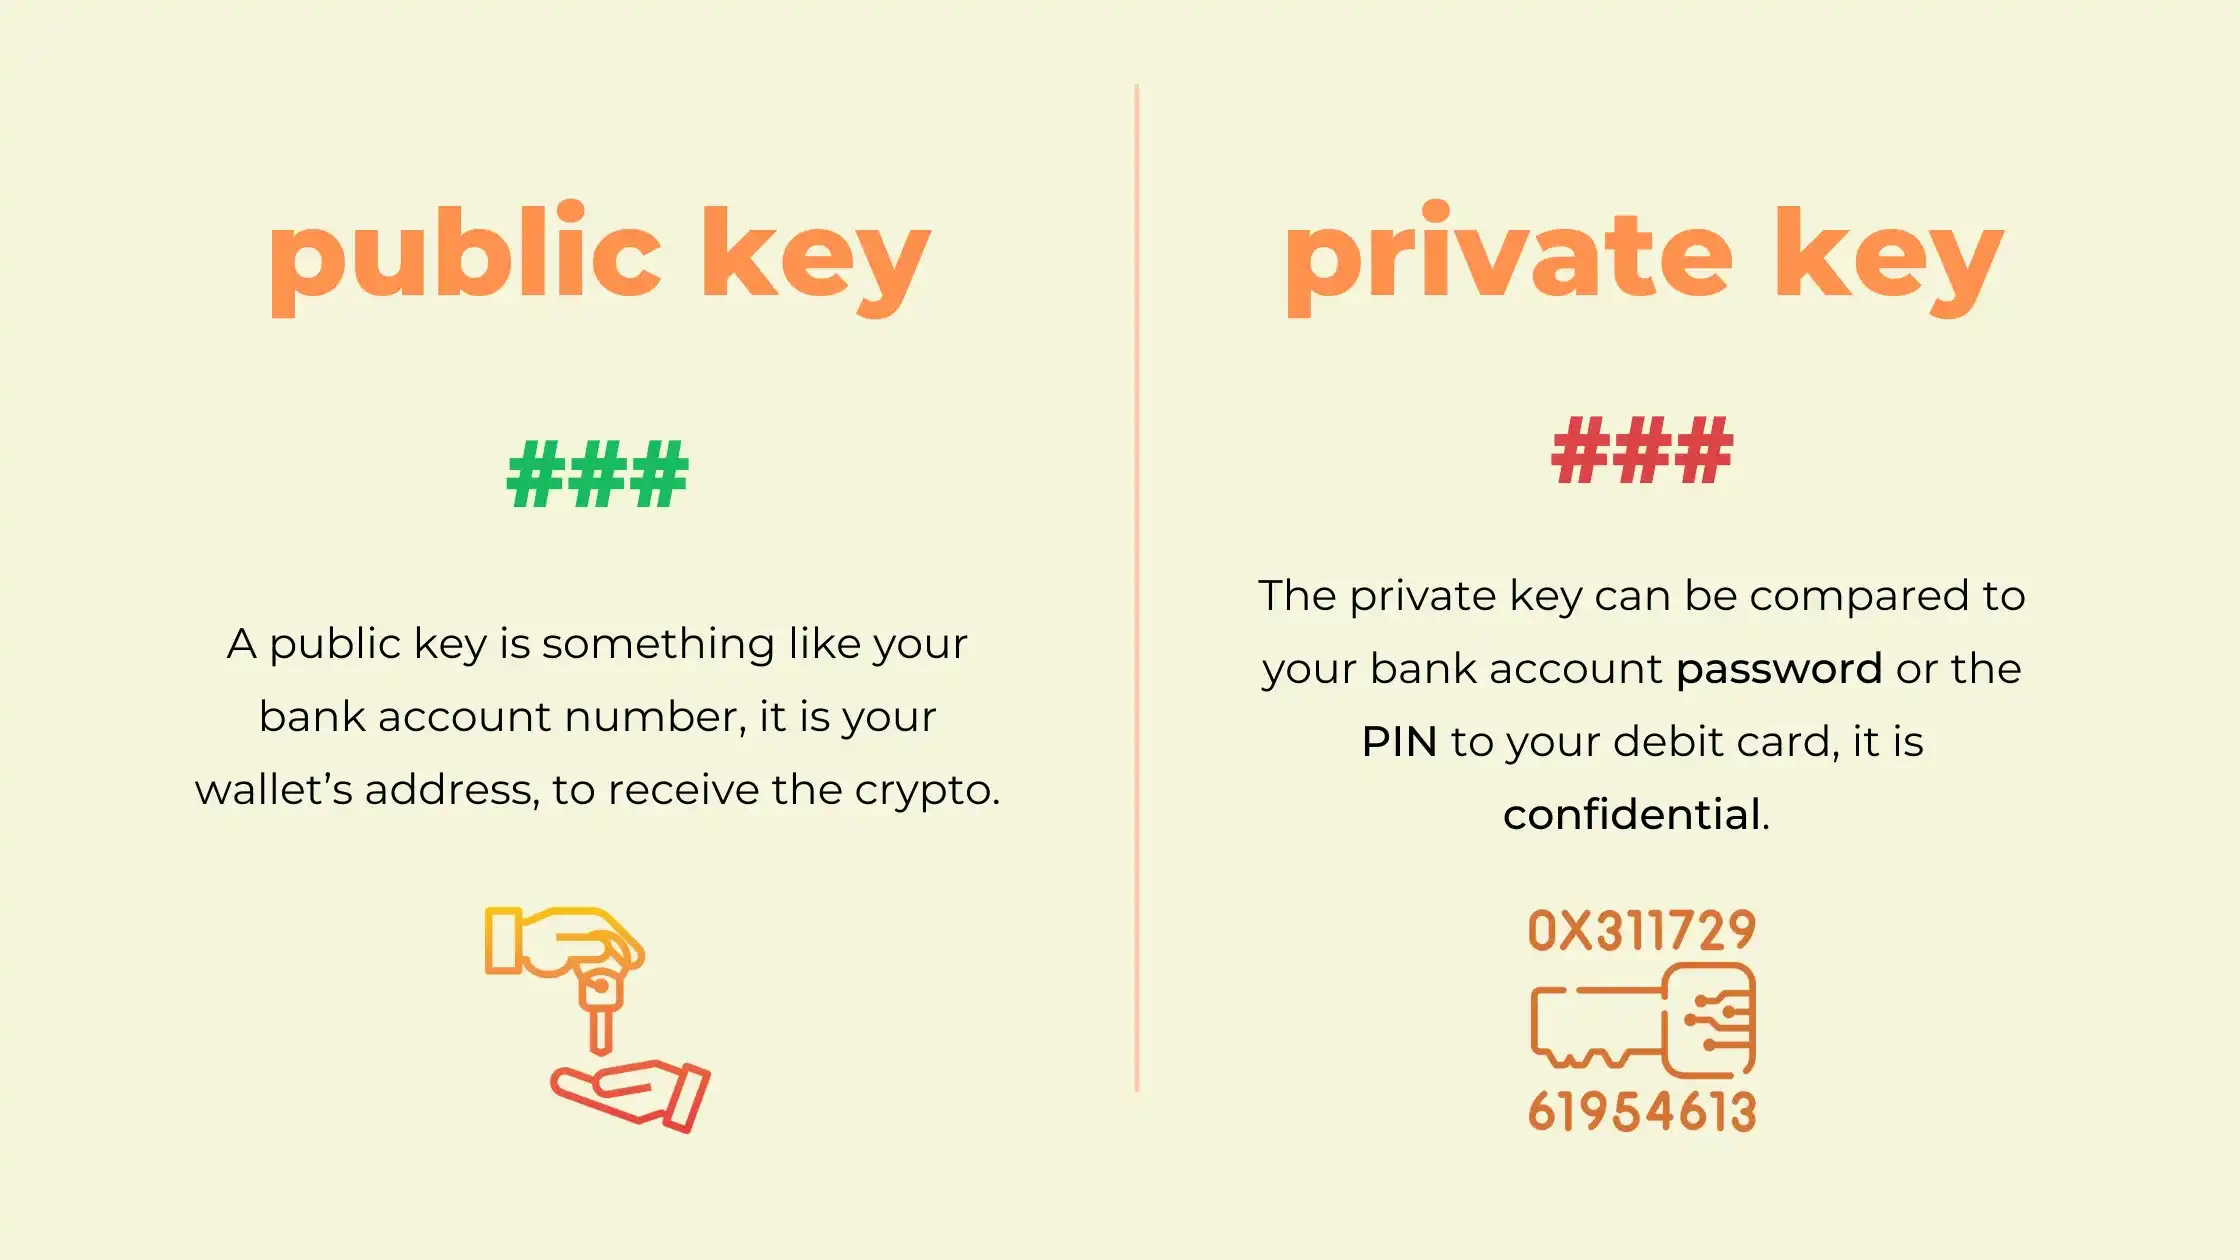 Pin on Wallets/keys